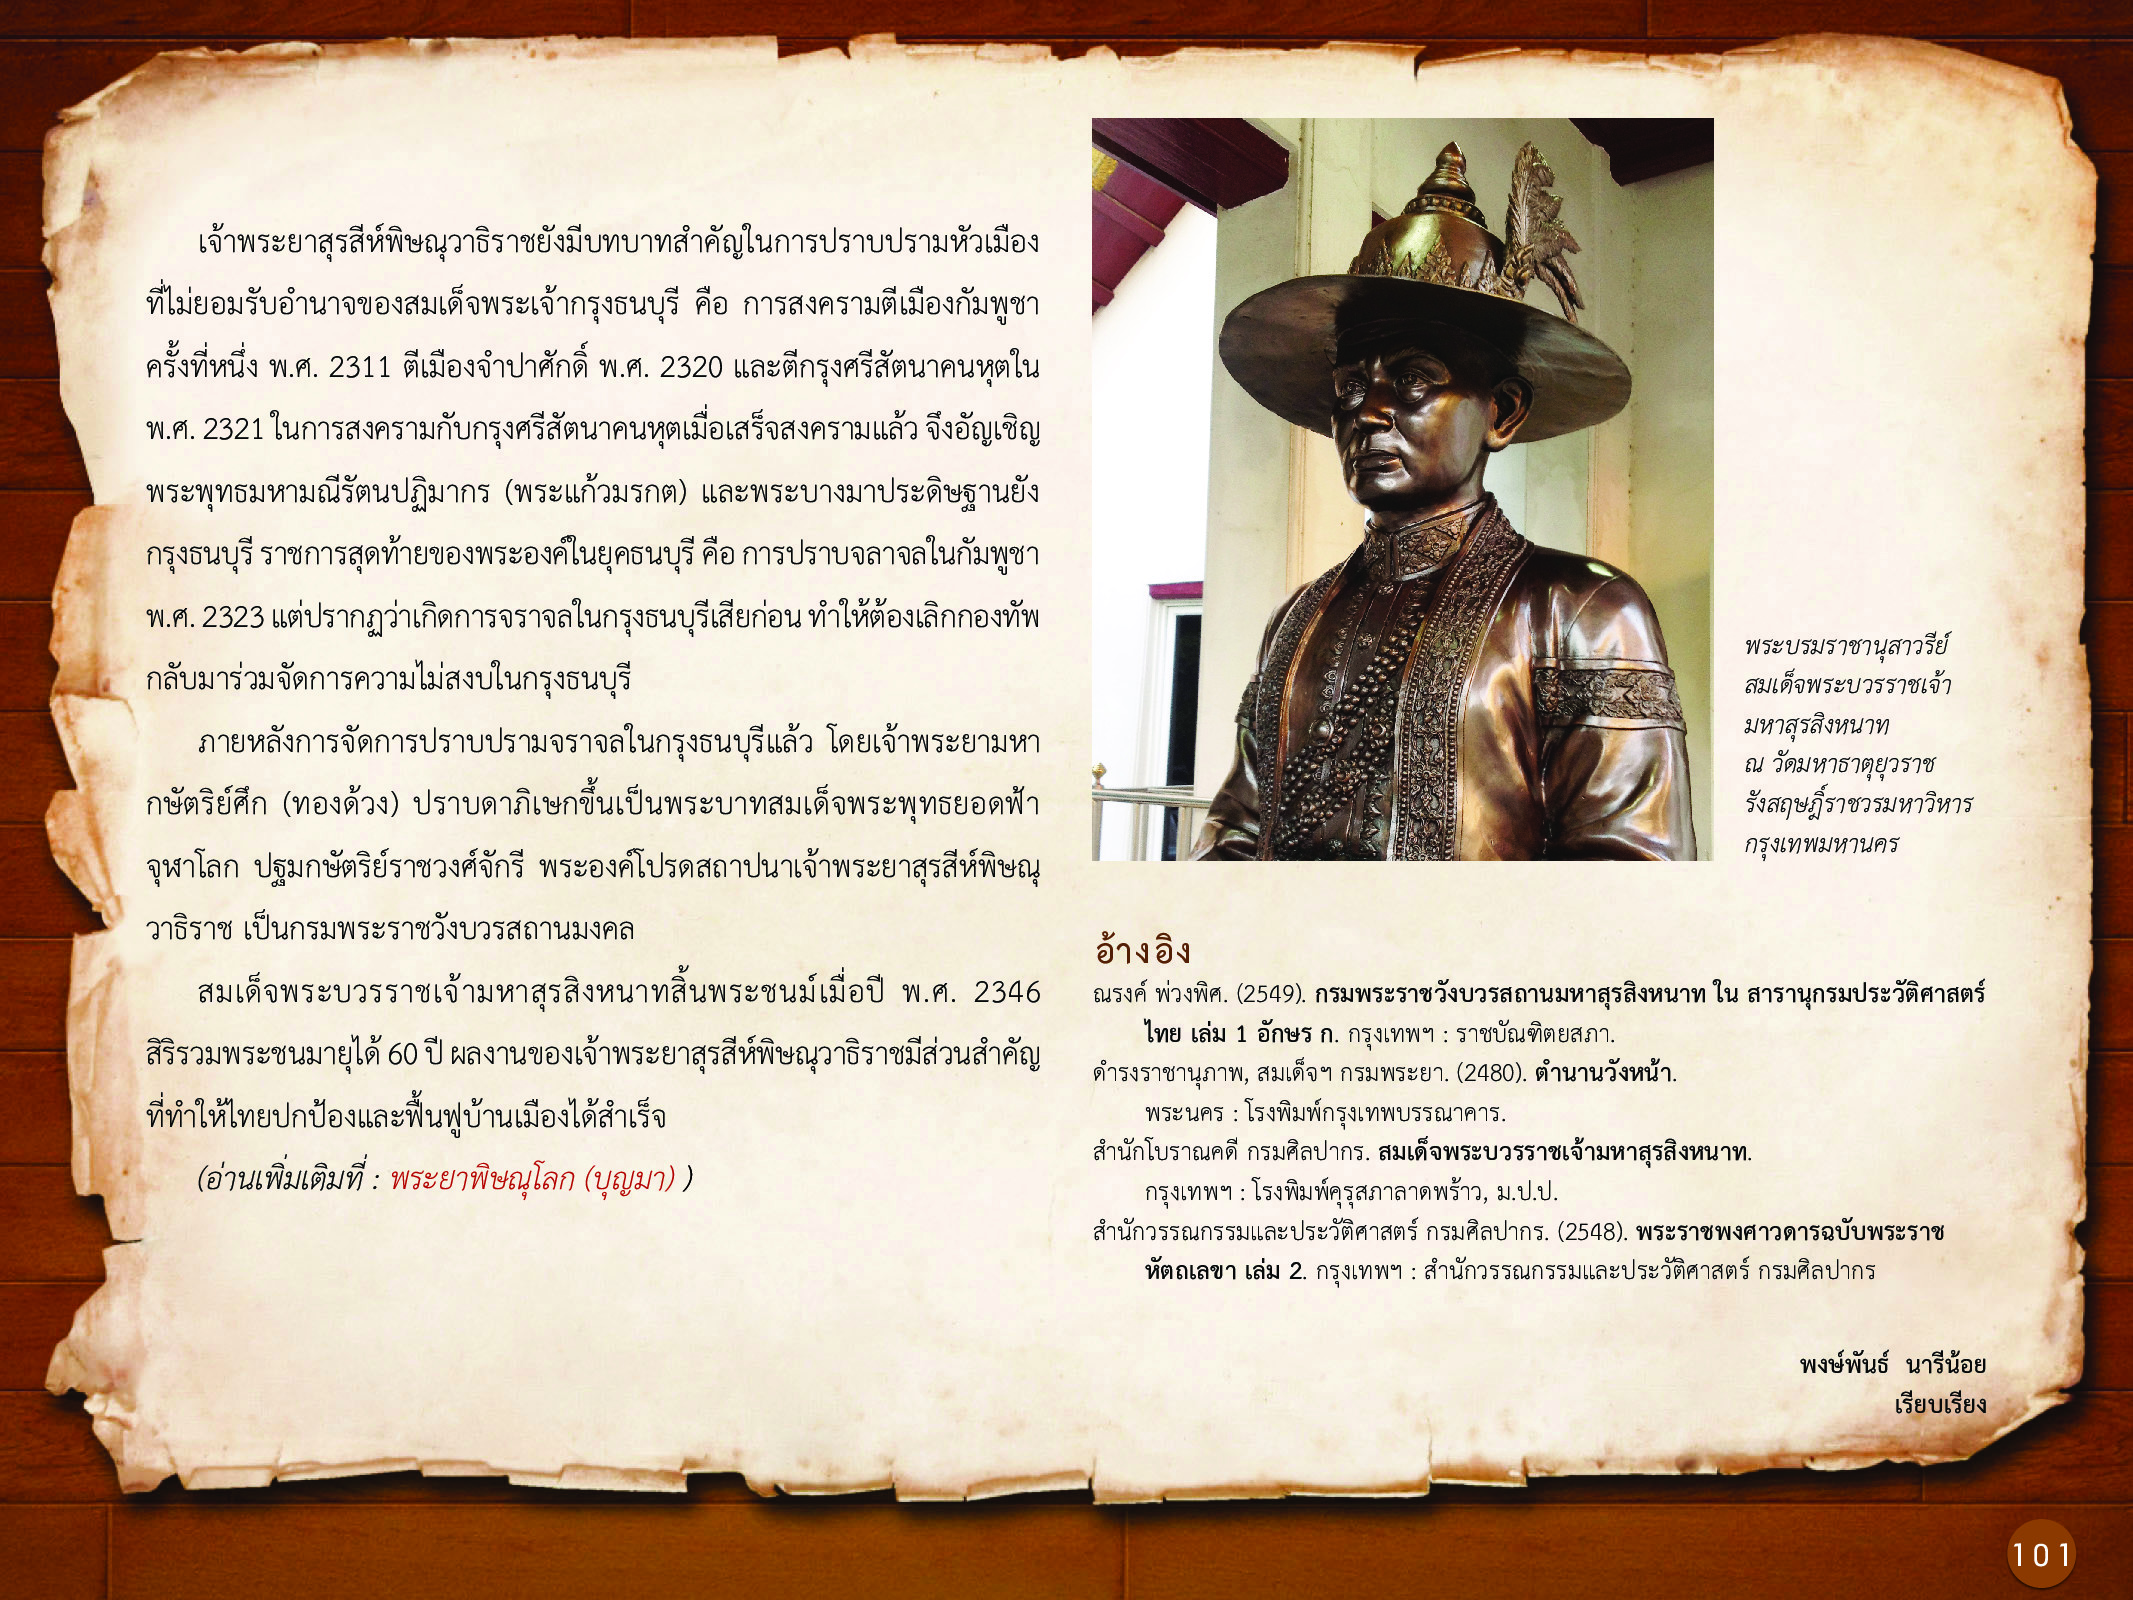 ประวัติศาสตร์กรุงธนบุรี ./images/history_dhonburi/101.jpg